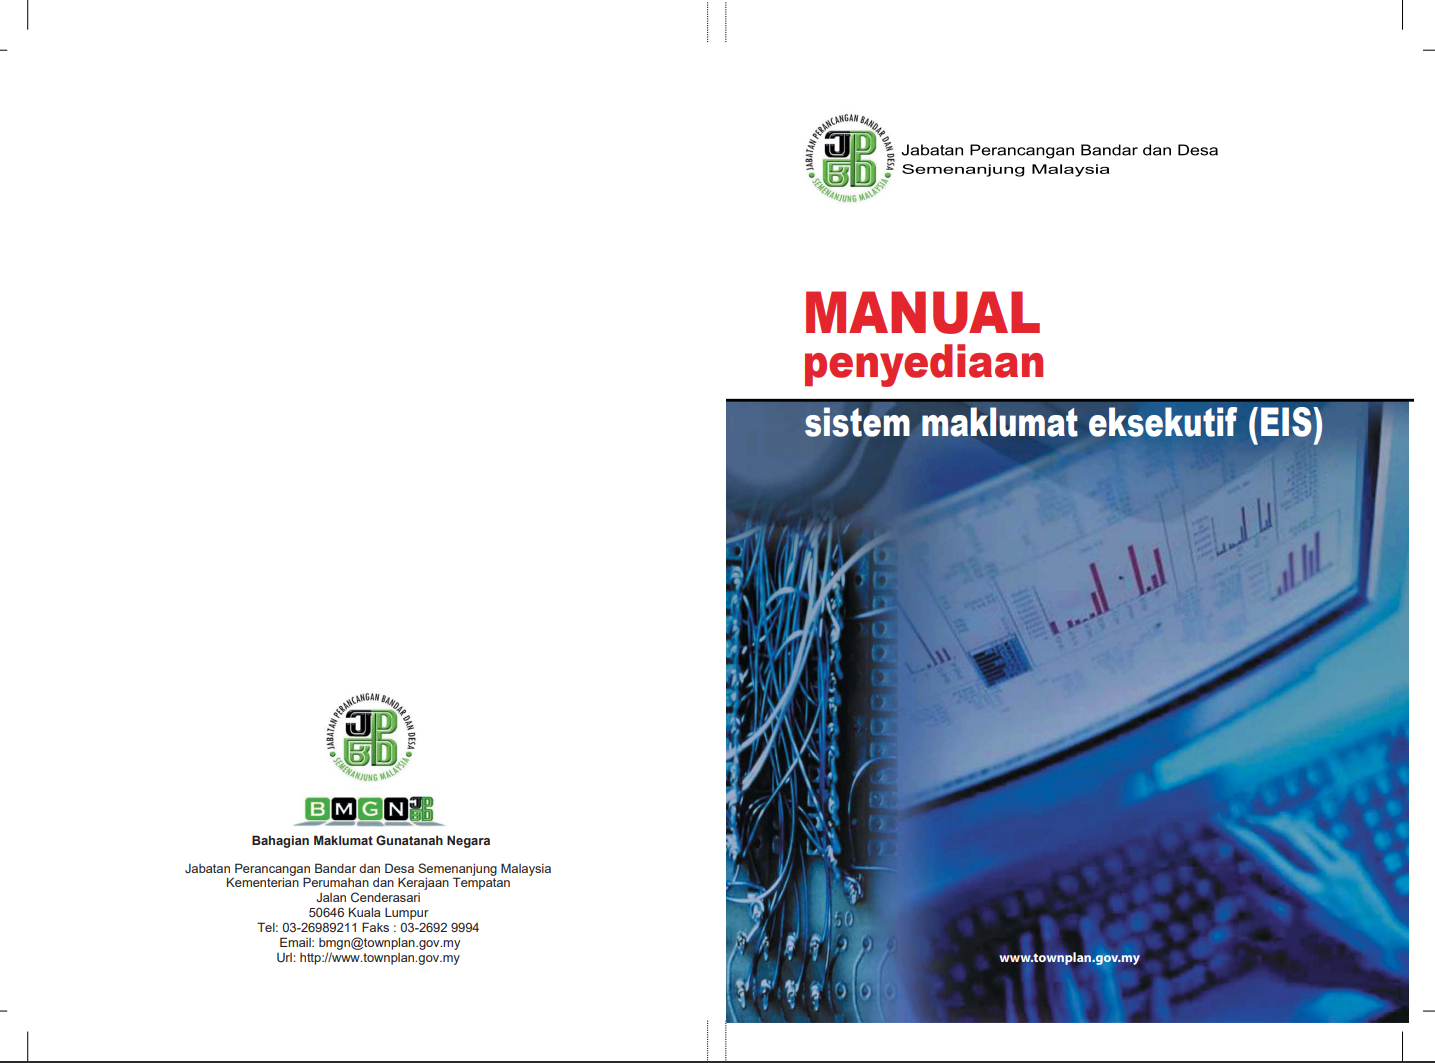 Manual Penyediaan Sistem Maklumat Eksekutif (EIS) Versi November 2009